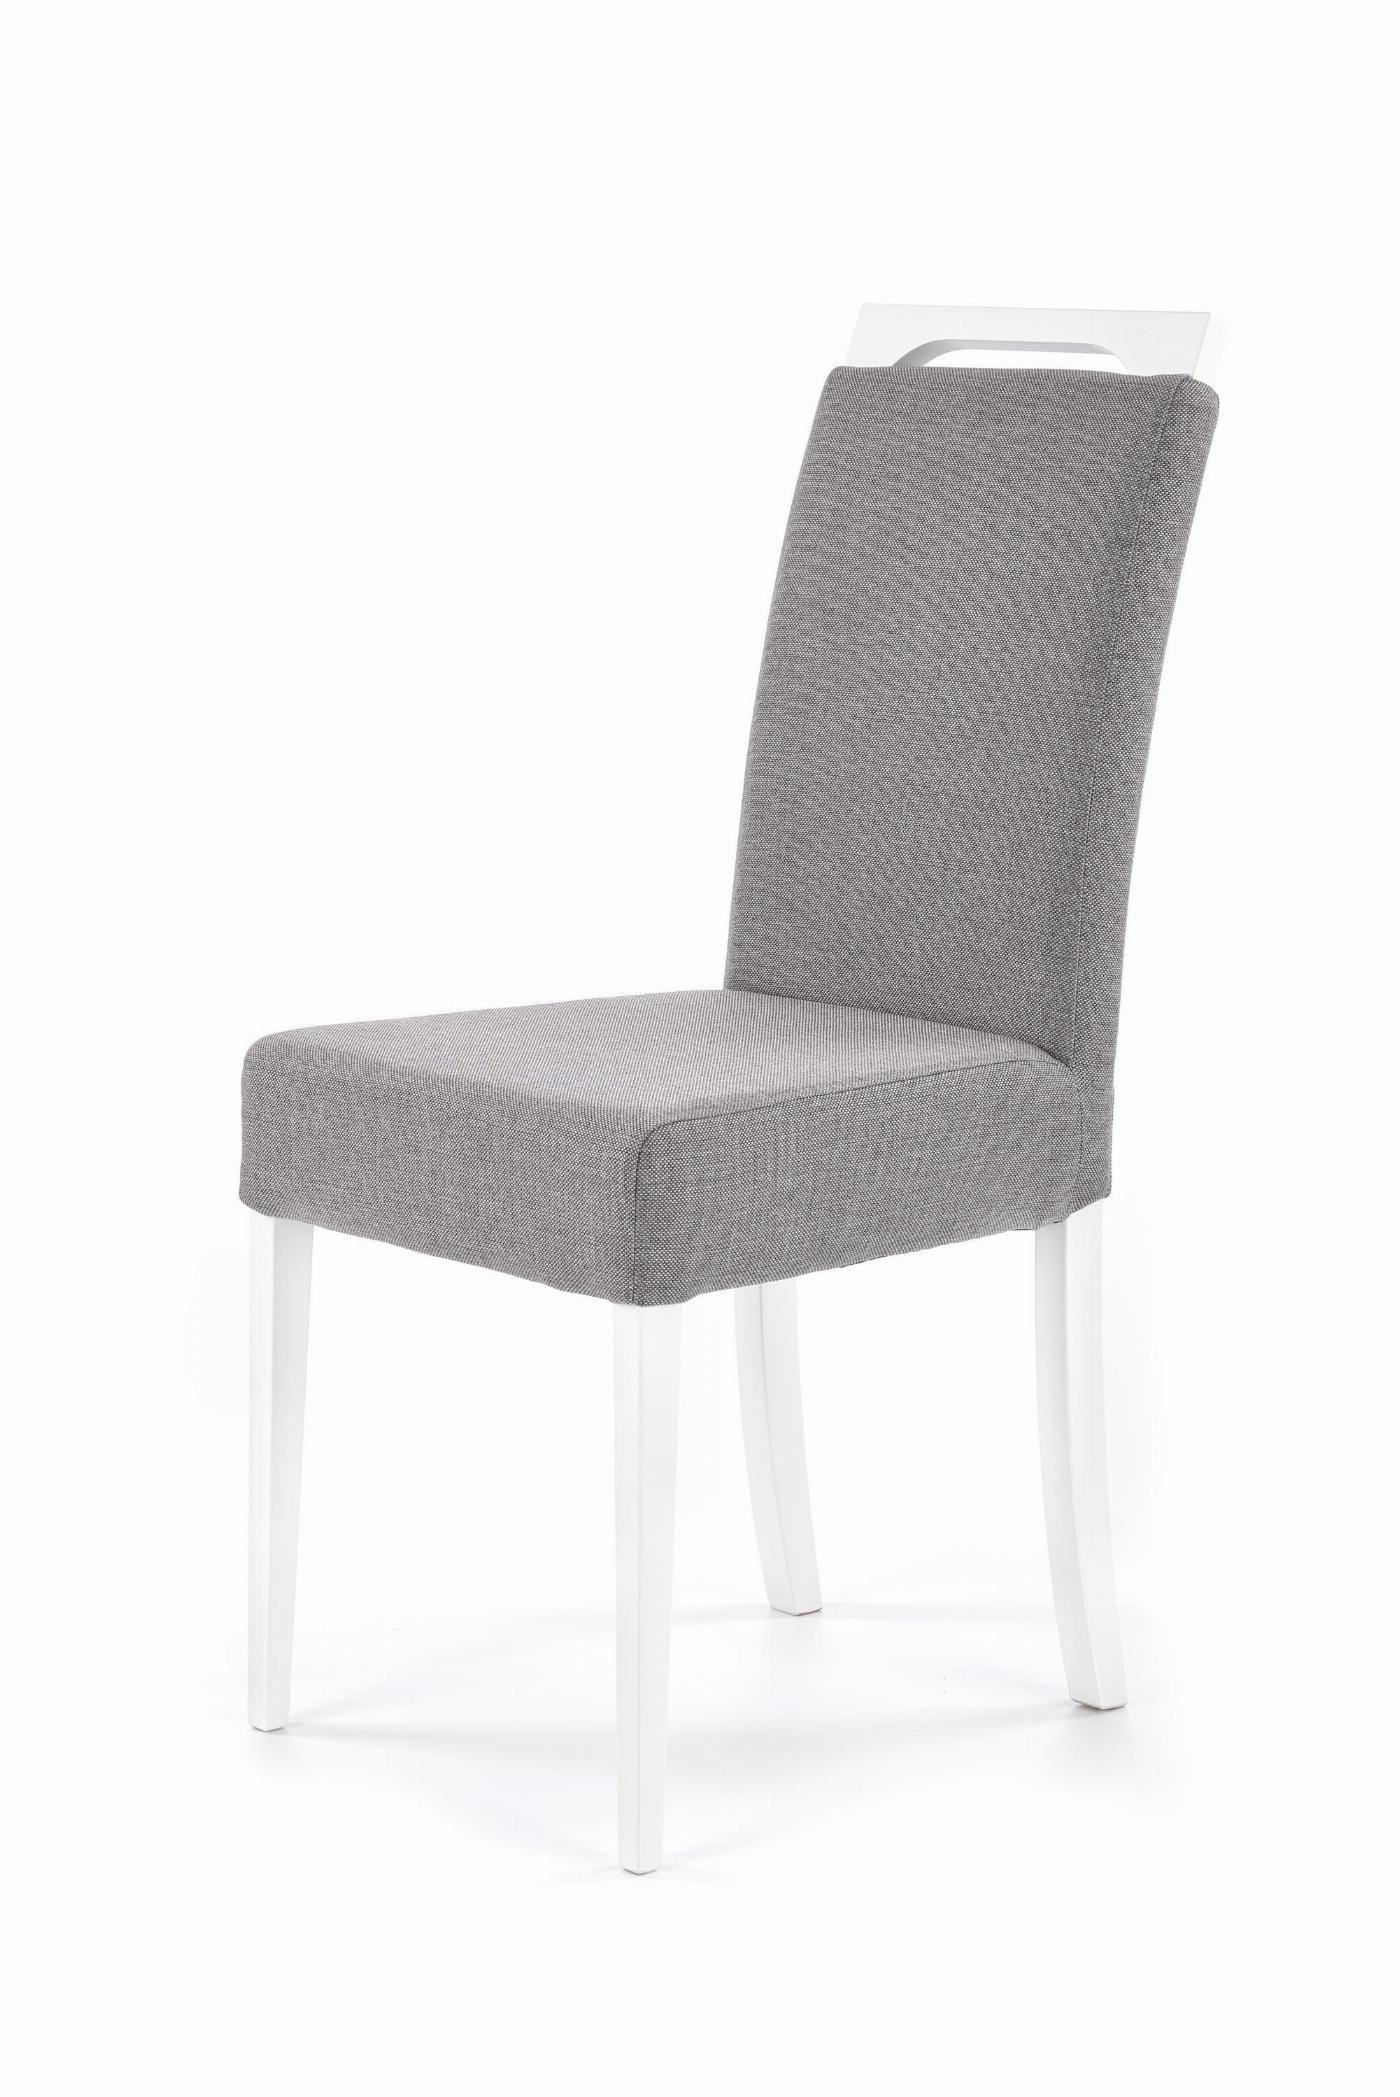 CLARION krzesło biały / tap: INARI 91